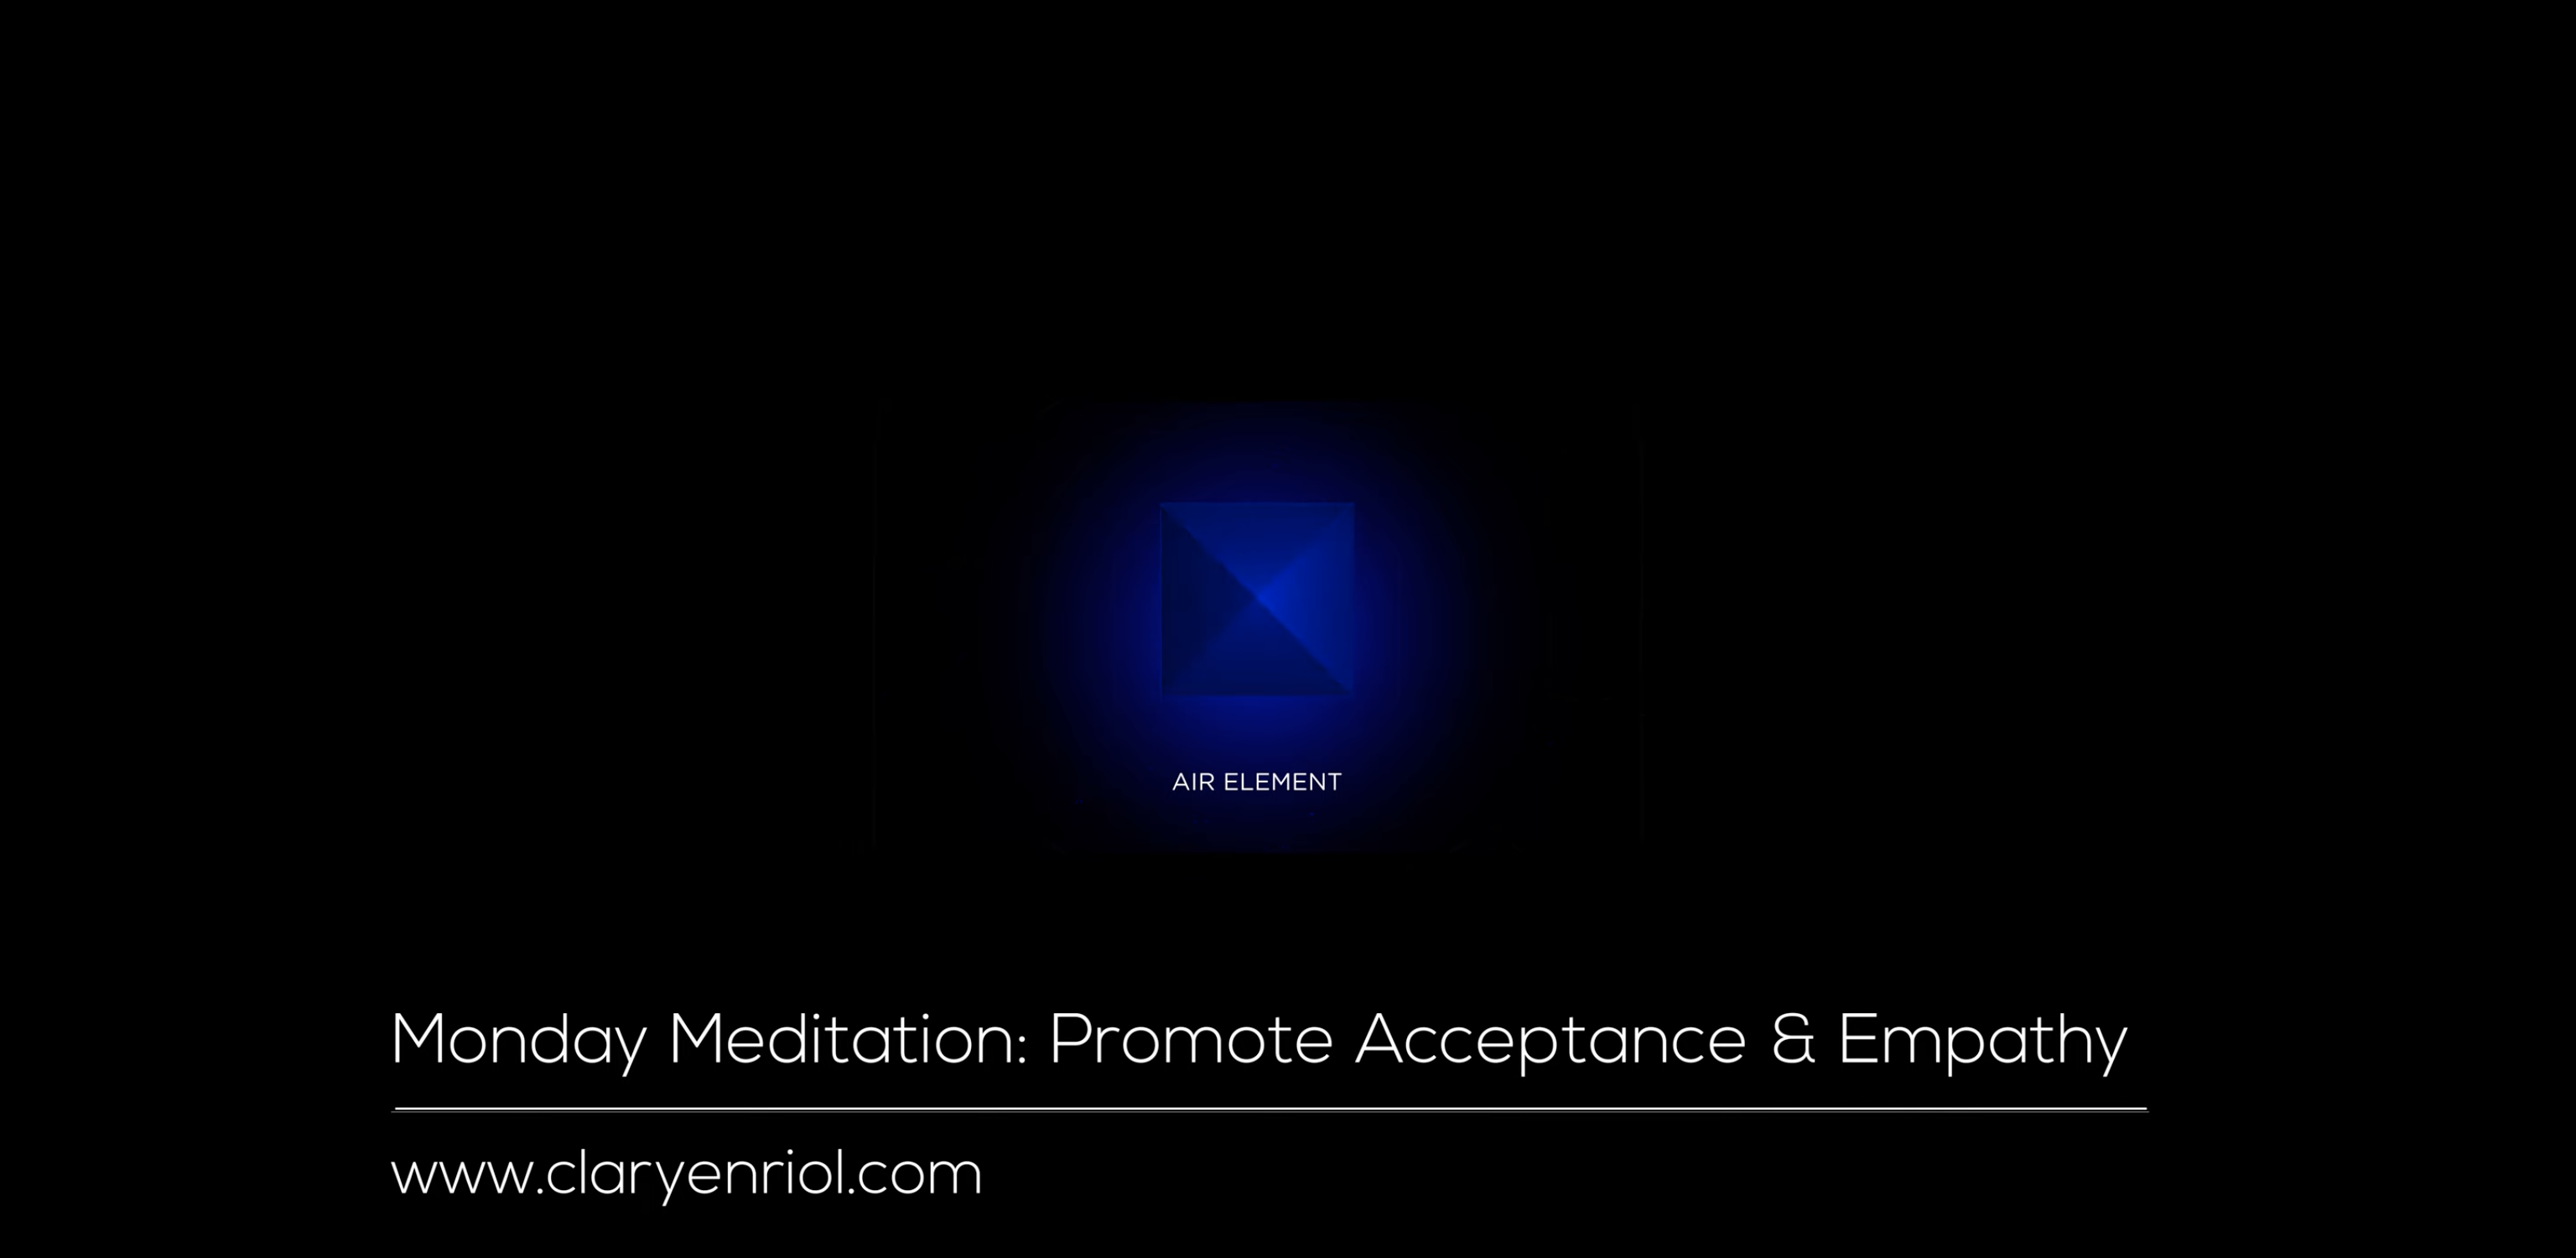 Mini Octahedron Meditation Promote Acceptance & Empathy